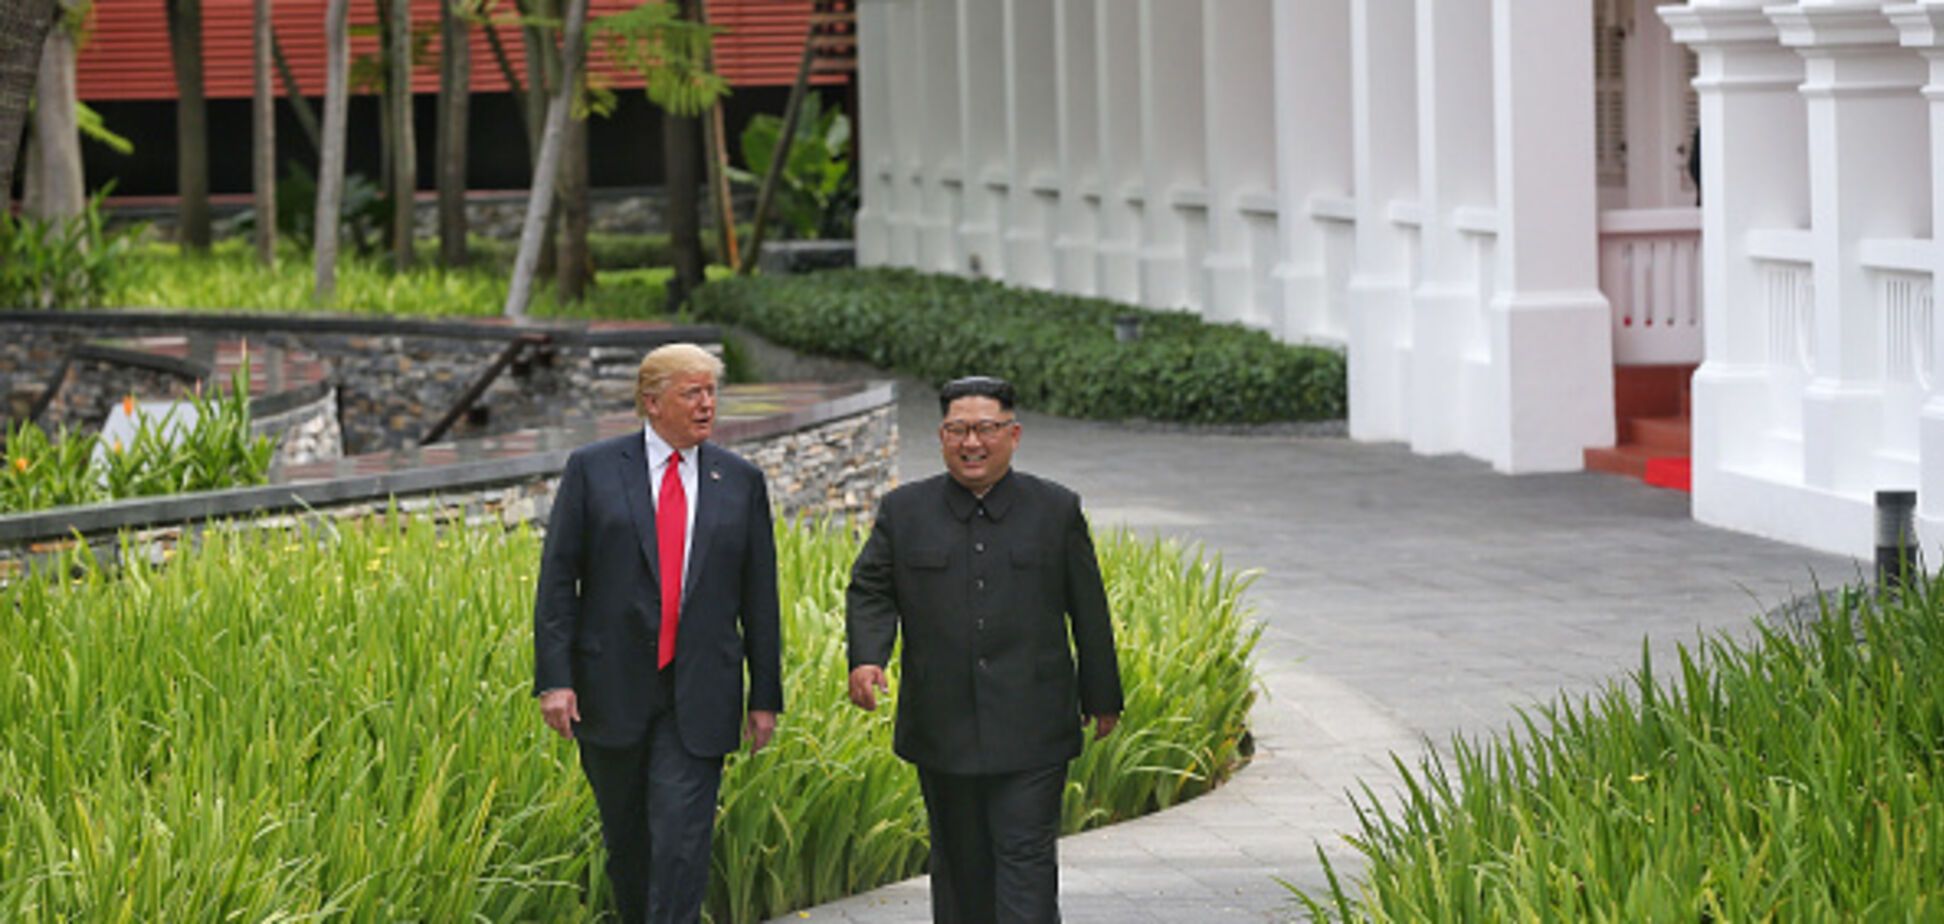 Где встречались и жили Трамп с Ким Чен Ыном: фото отелей